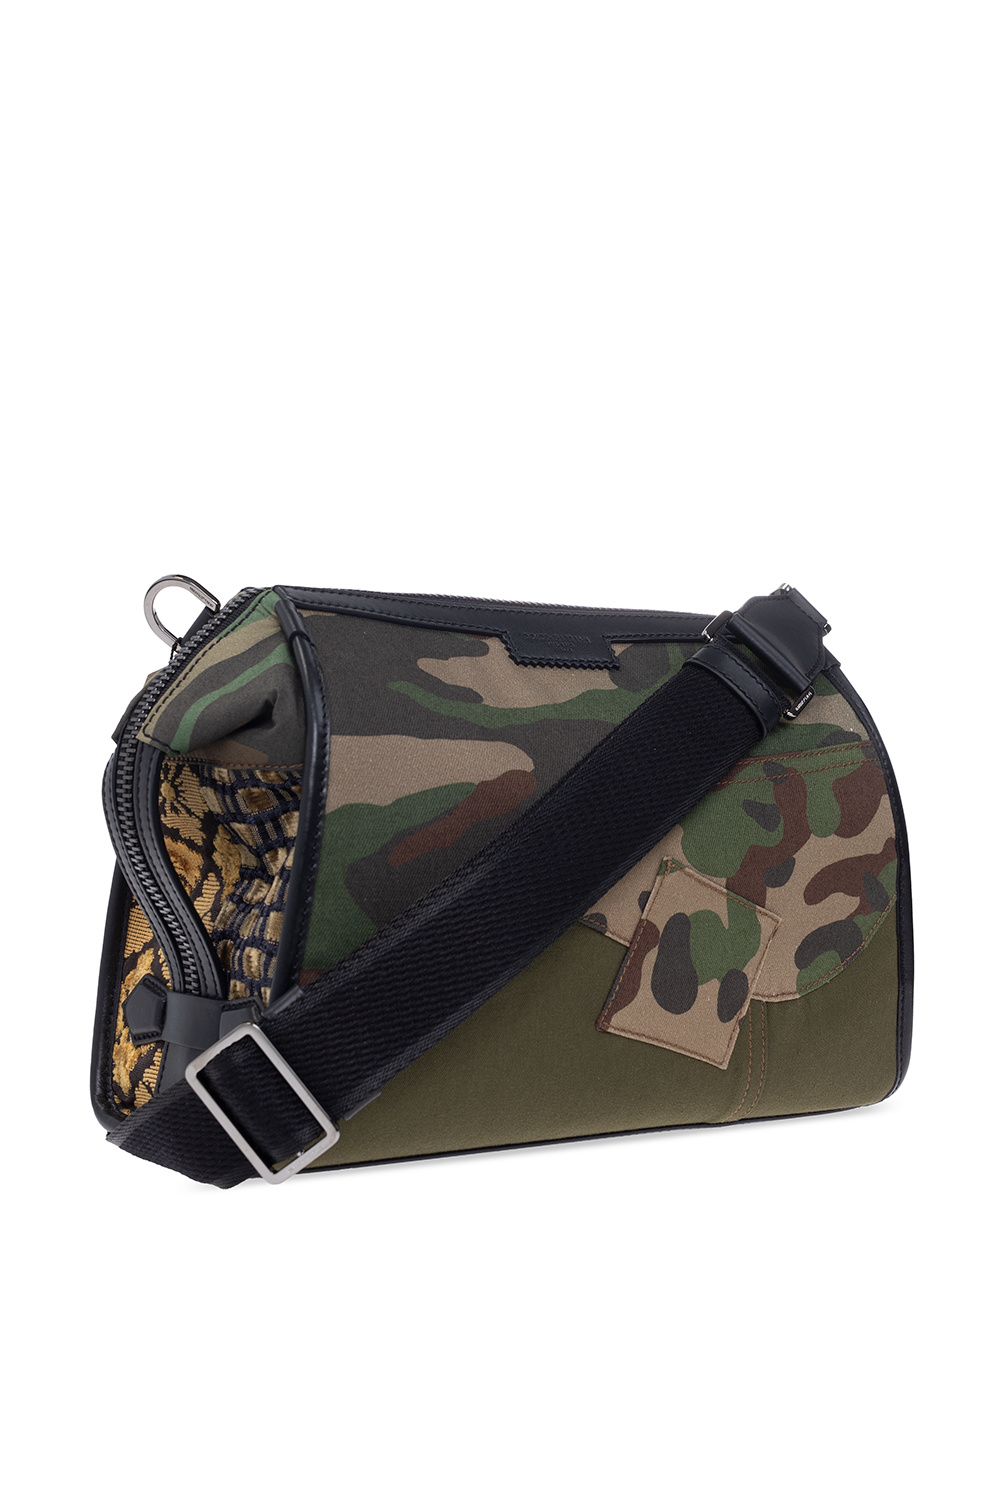 Dolce & Gabbana Devotion embellished shoulder bag ‘Edge’ shopper bag